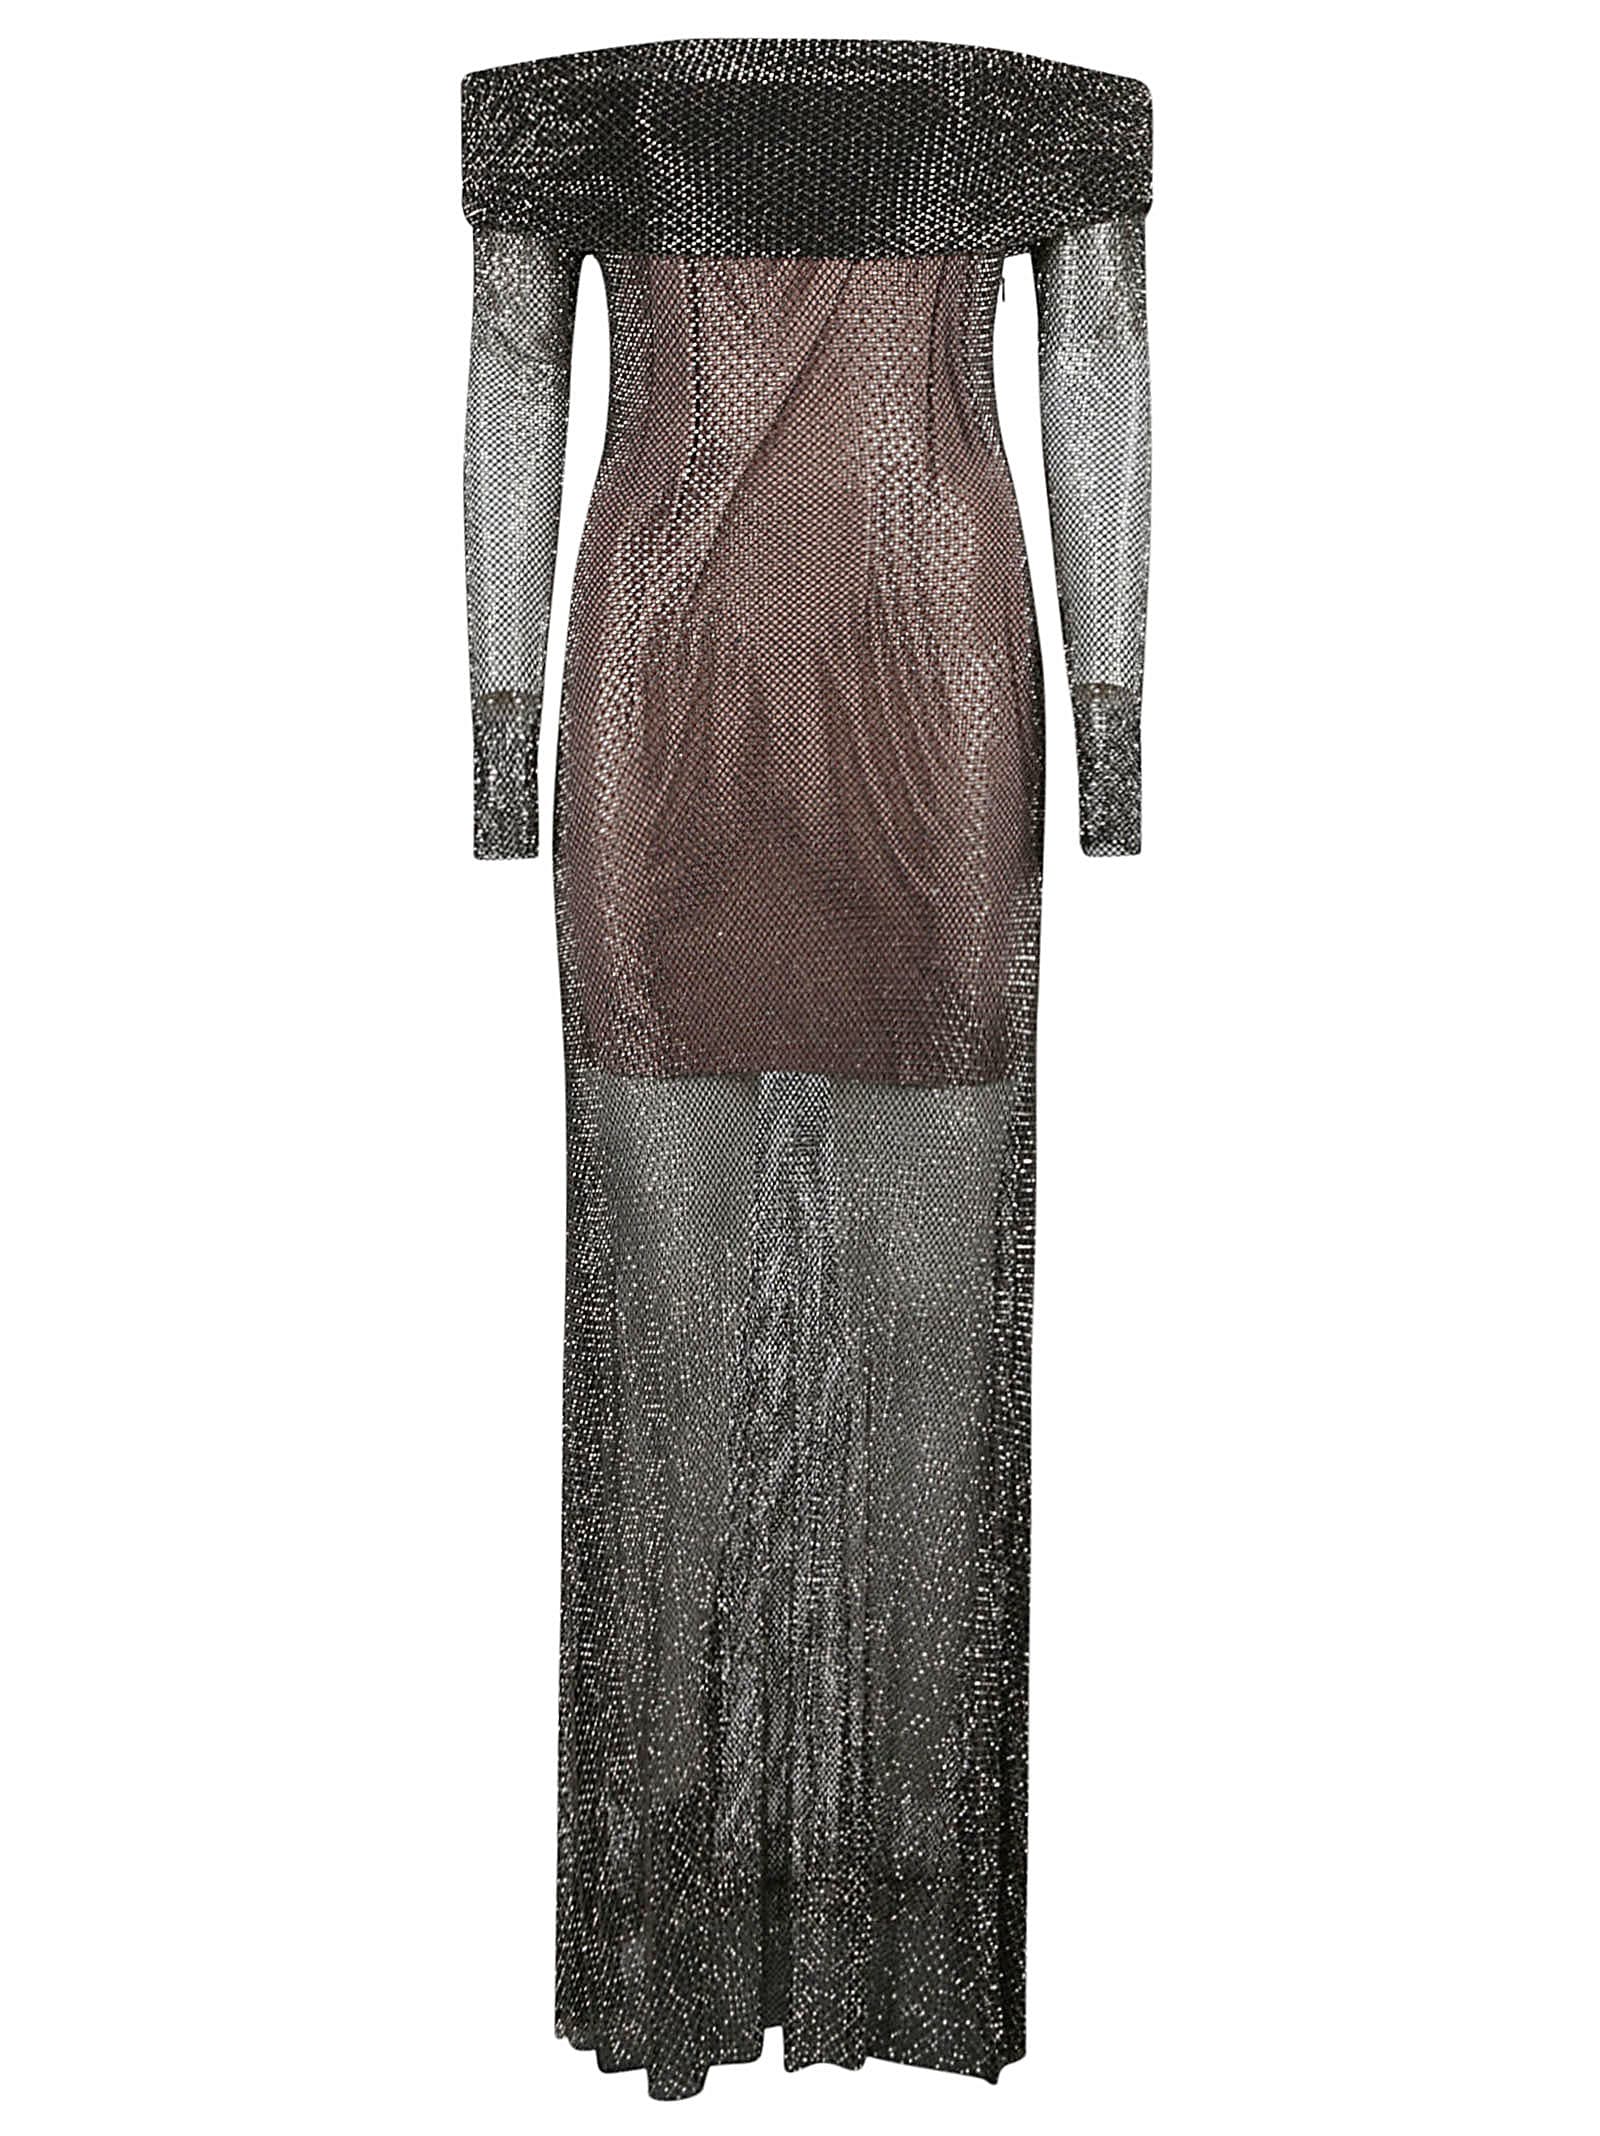 Rhinestone Fishnet Maxi Dress